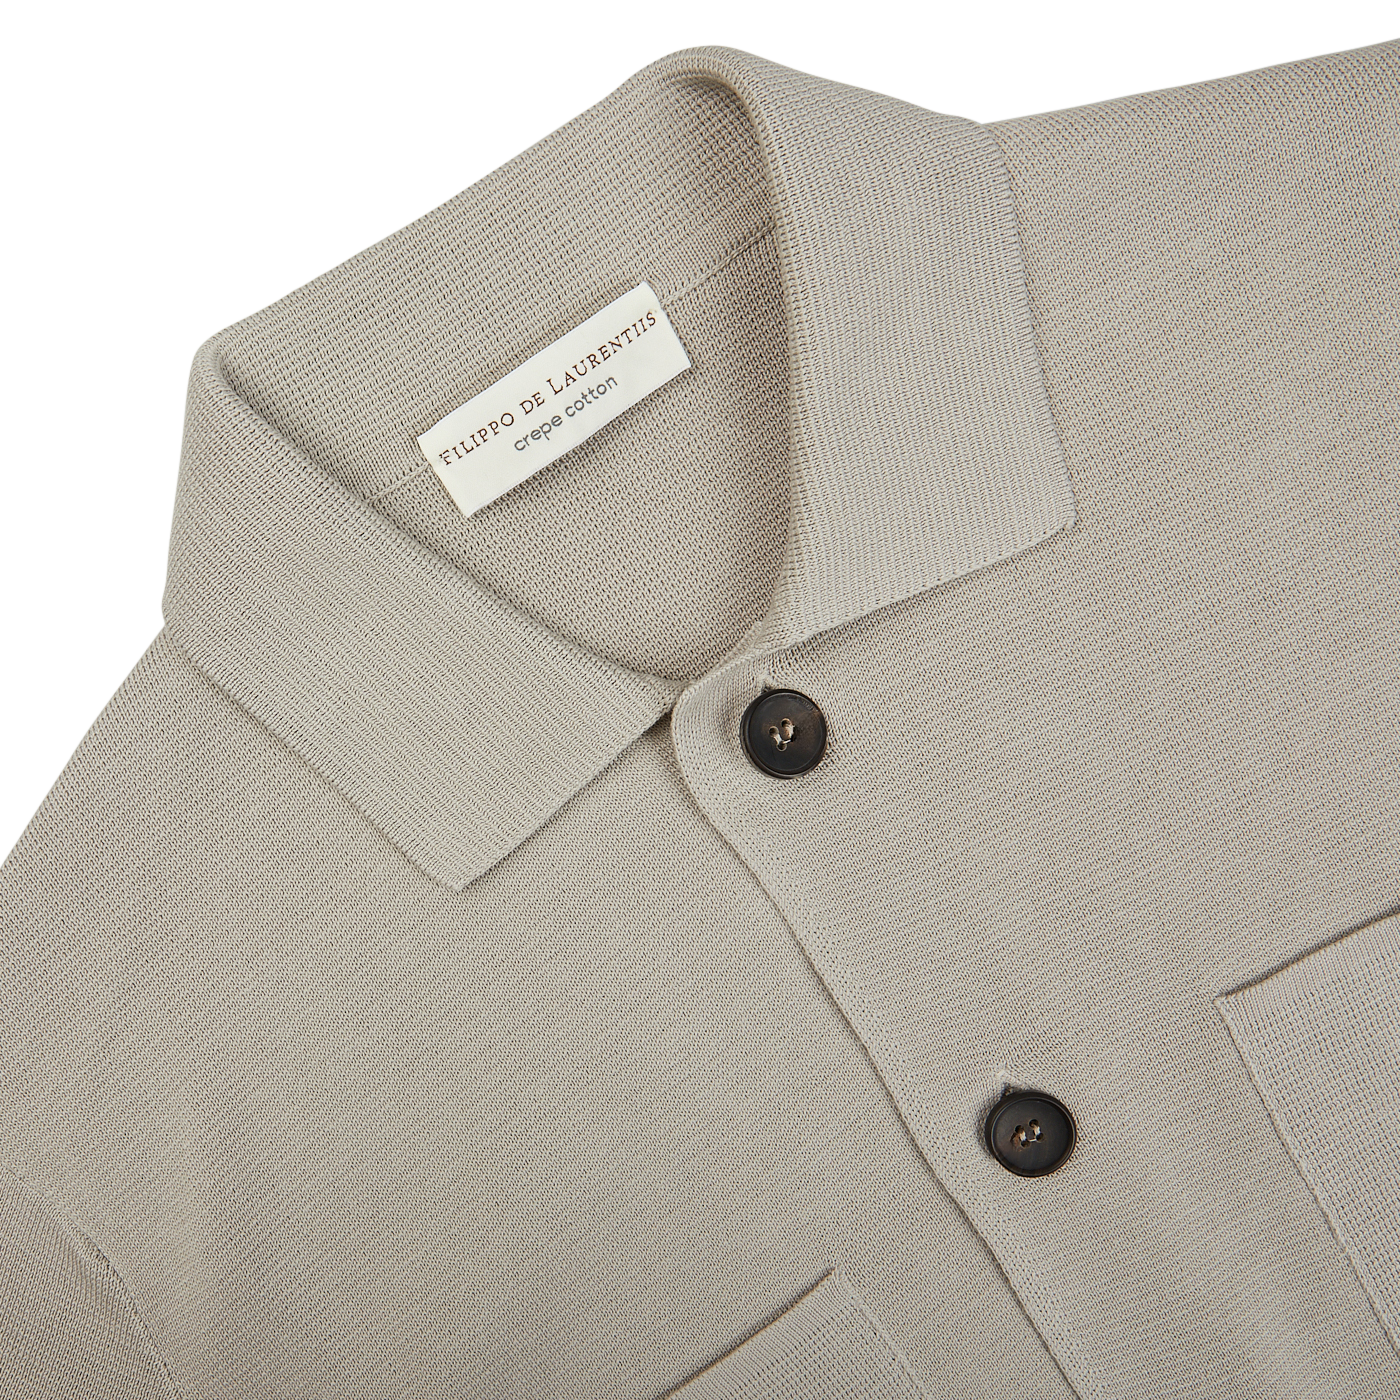 The men's Nebbia Grey Crepe Cotton Field Jacket in beige, made in Italy by Filippo de Laurentiis.